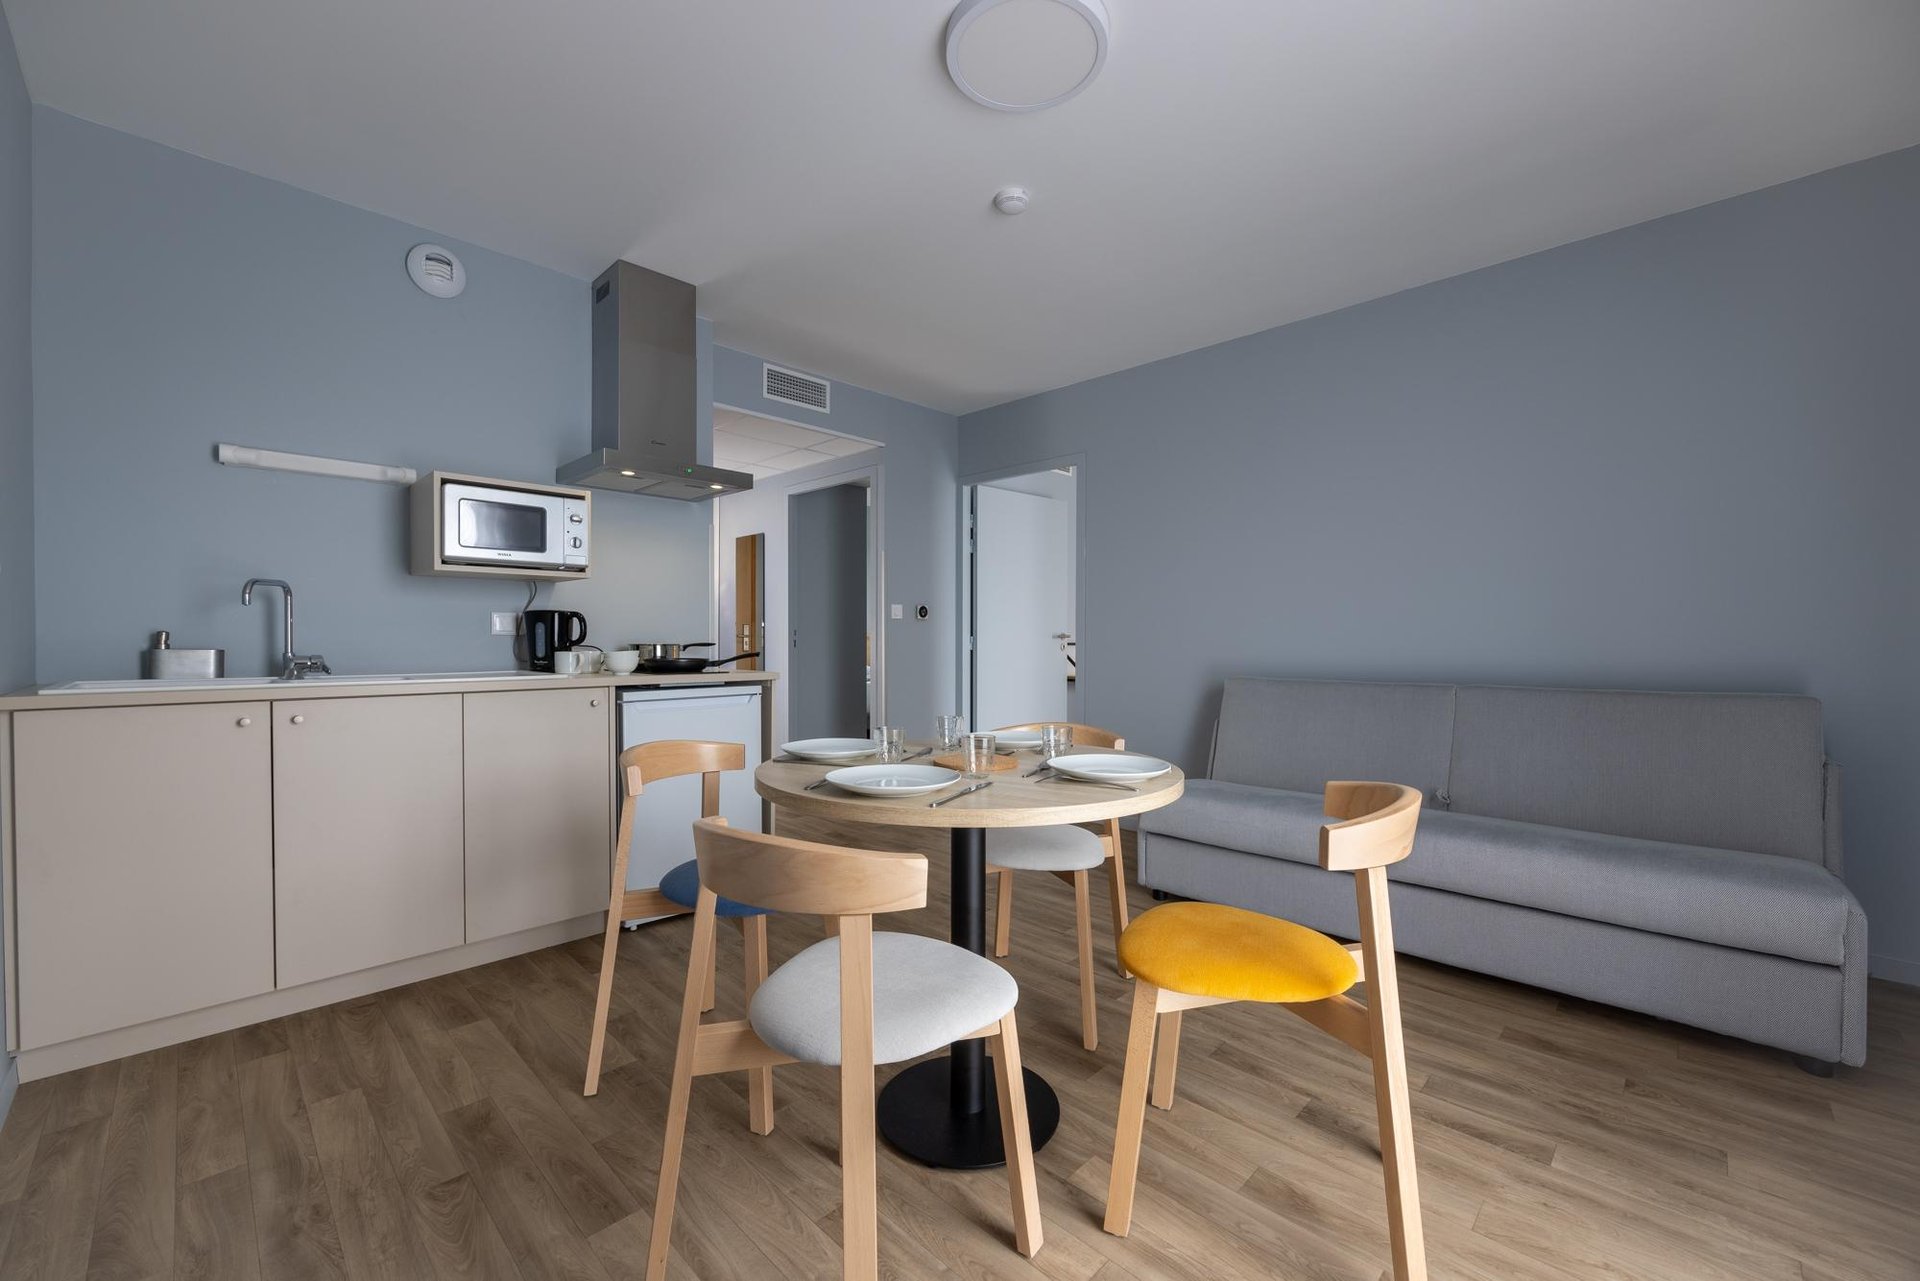 Le Relais des Deux Mers | 3 star hotel Lot-et-Garonne | Family flat | Living room and kitchen area